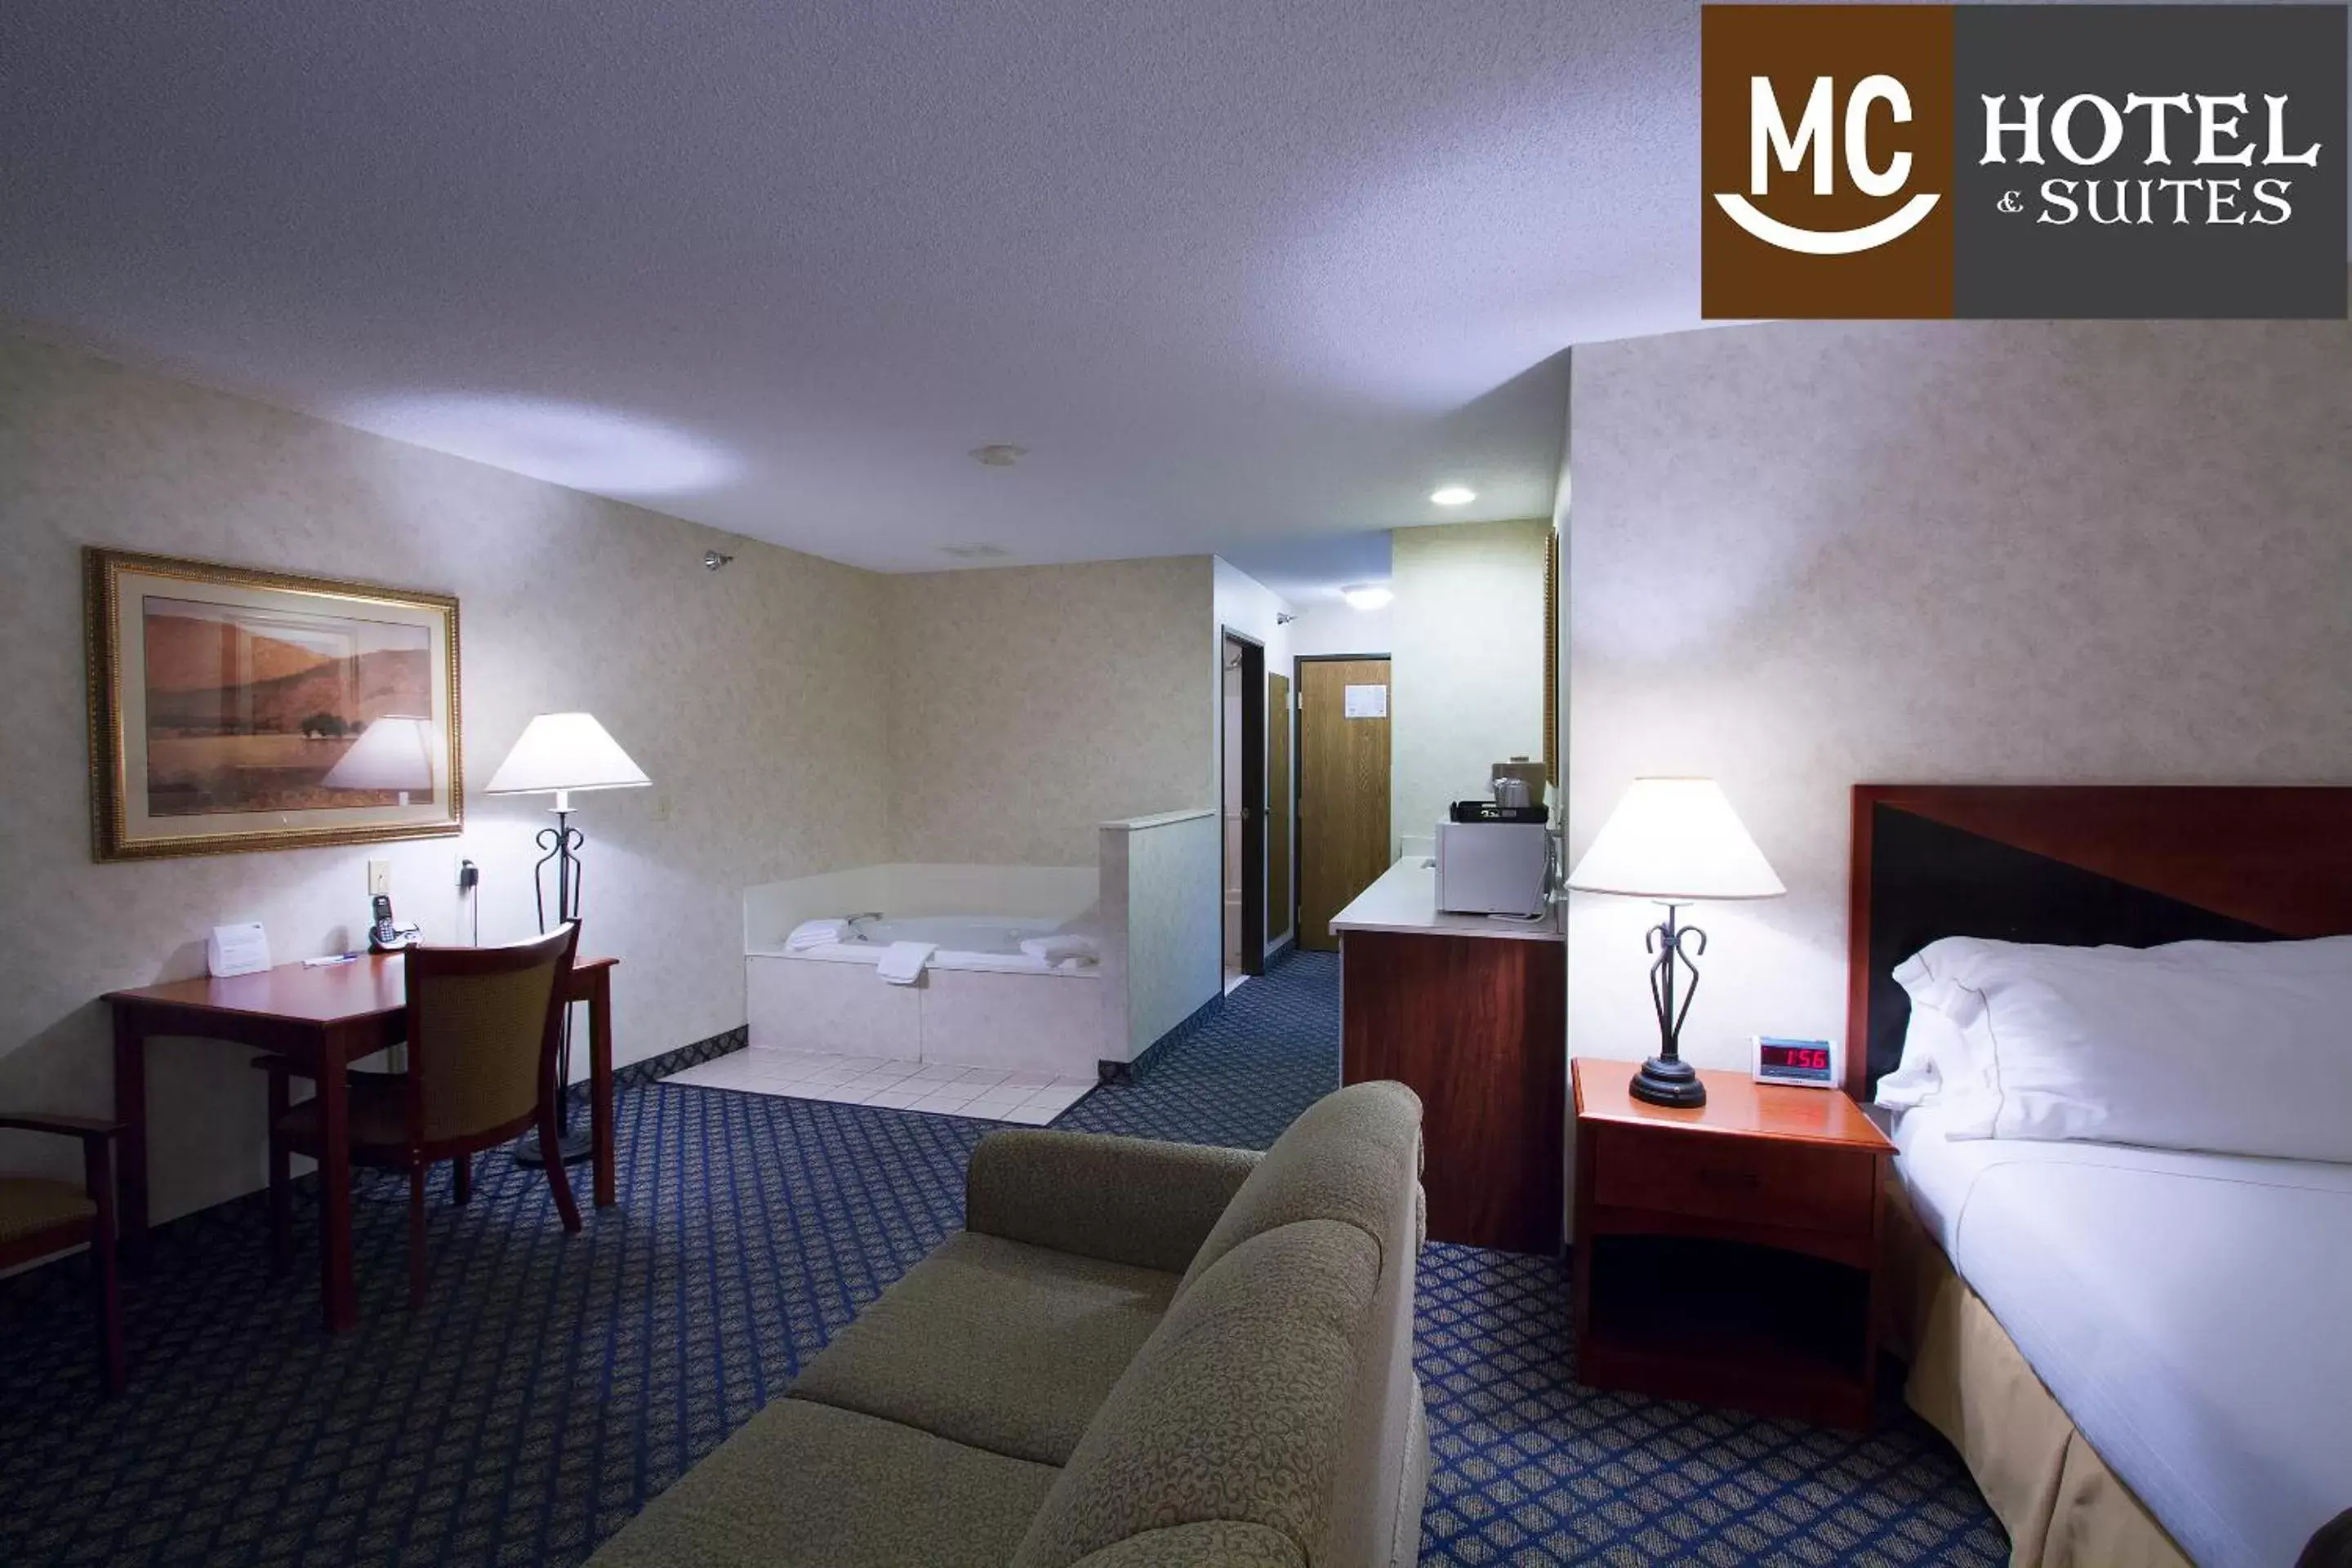 Hot Tub in Miles City Hotel & Suites